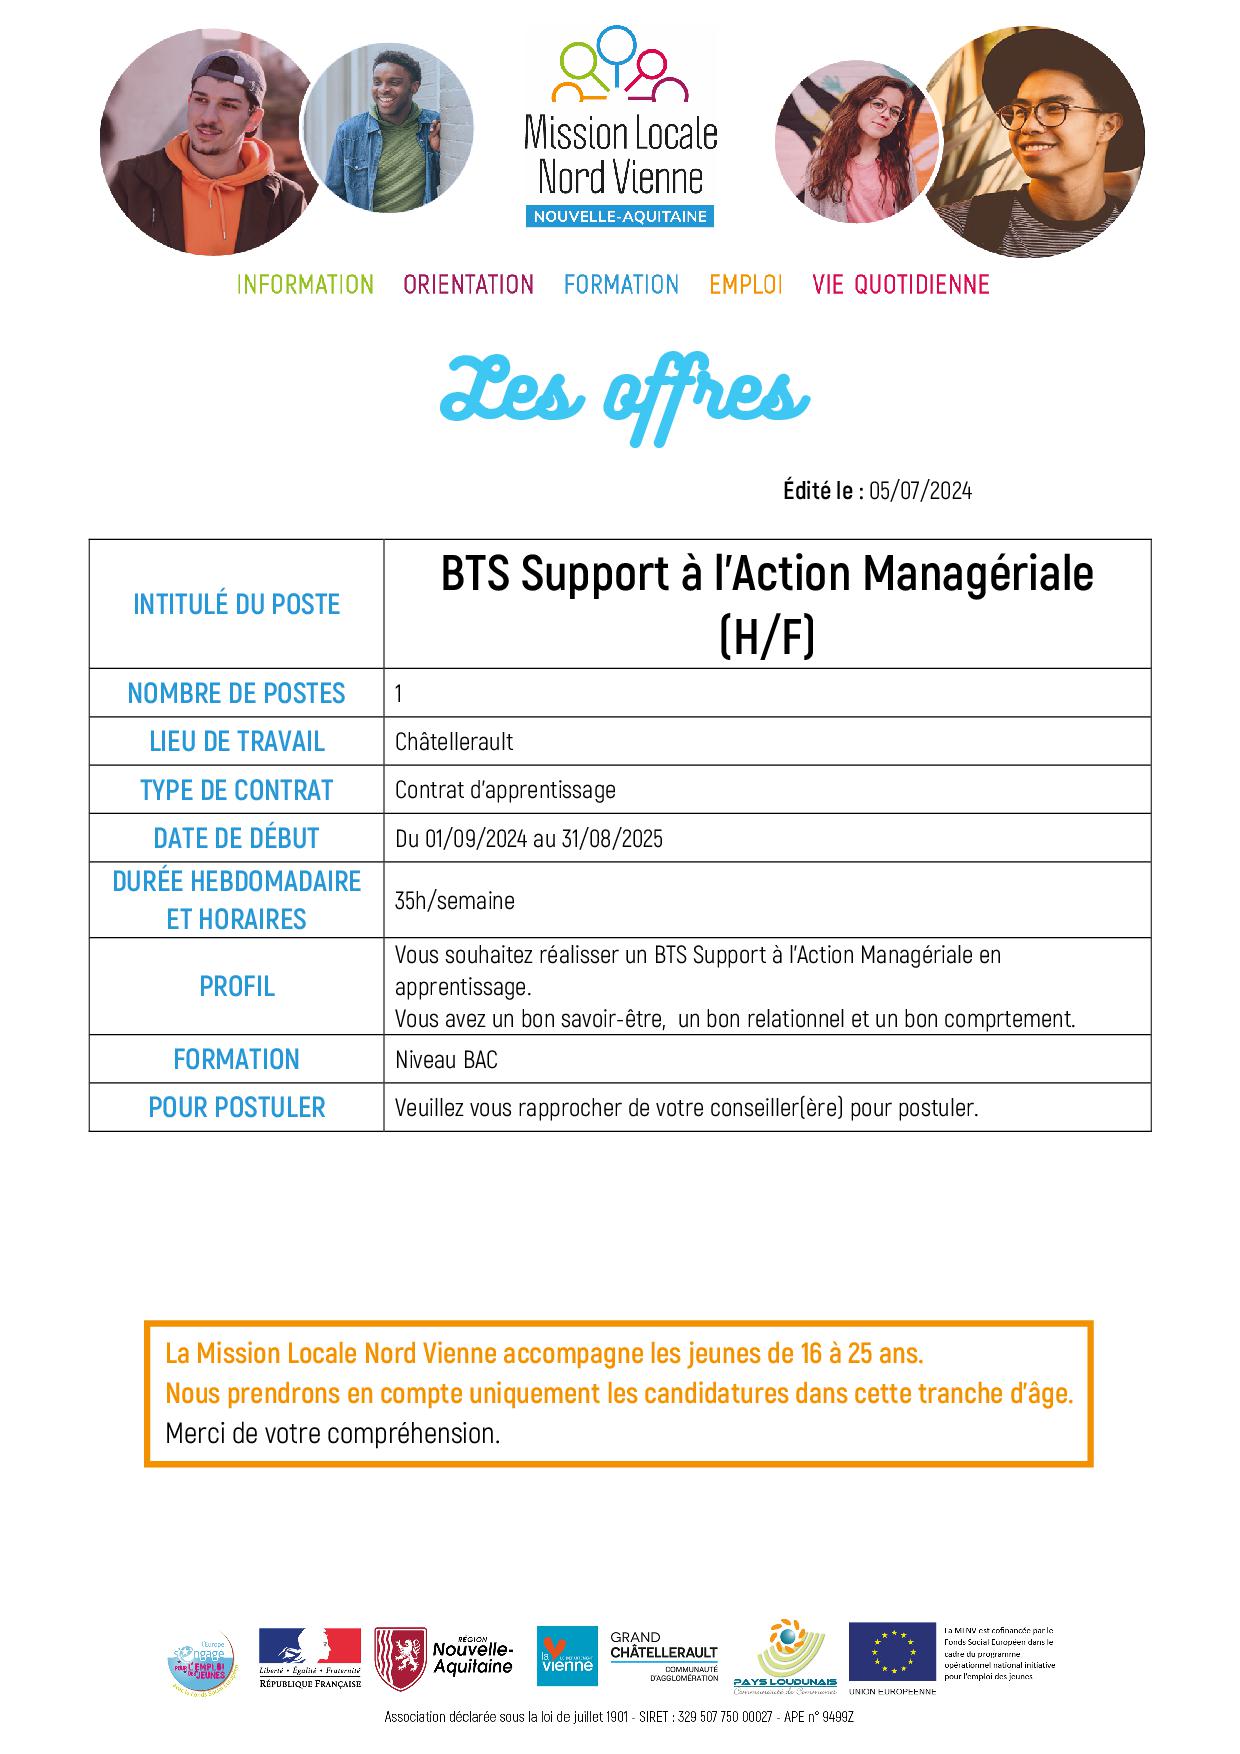 BTS Support à l’Action Managériale (H/F)